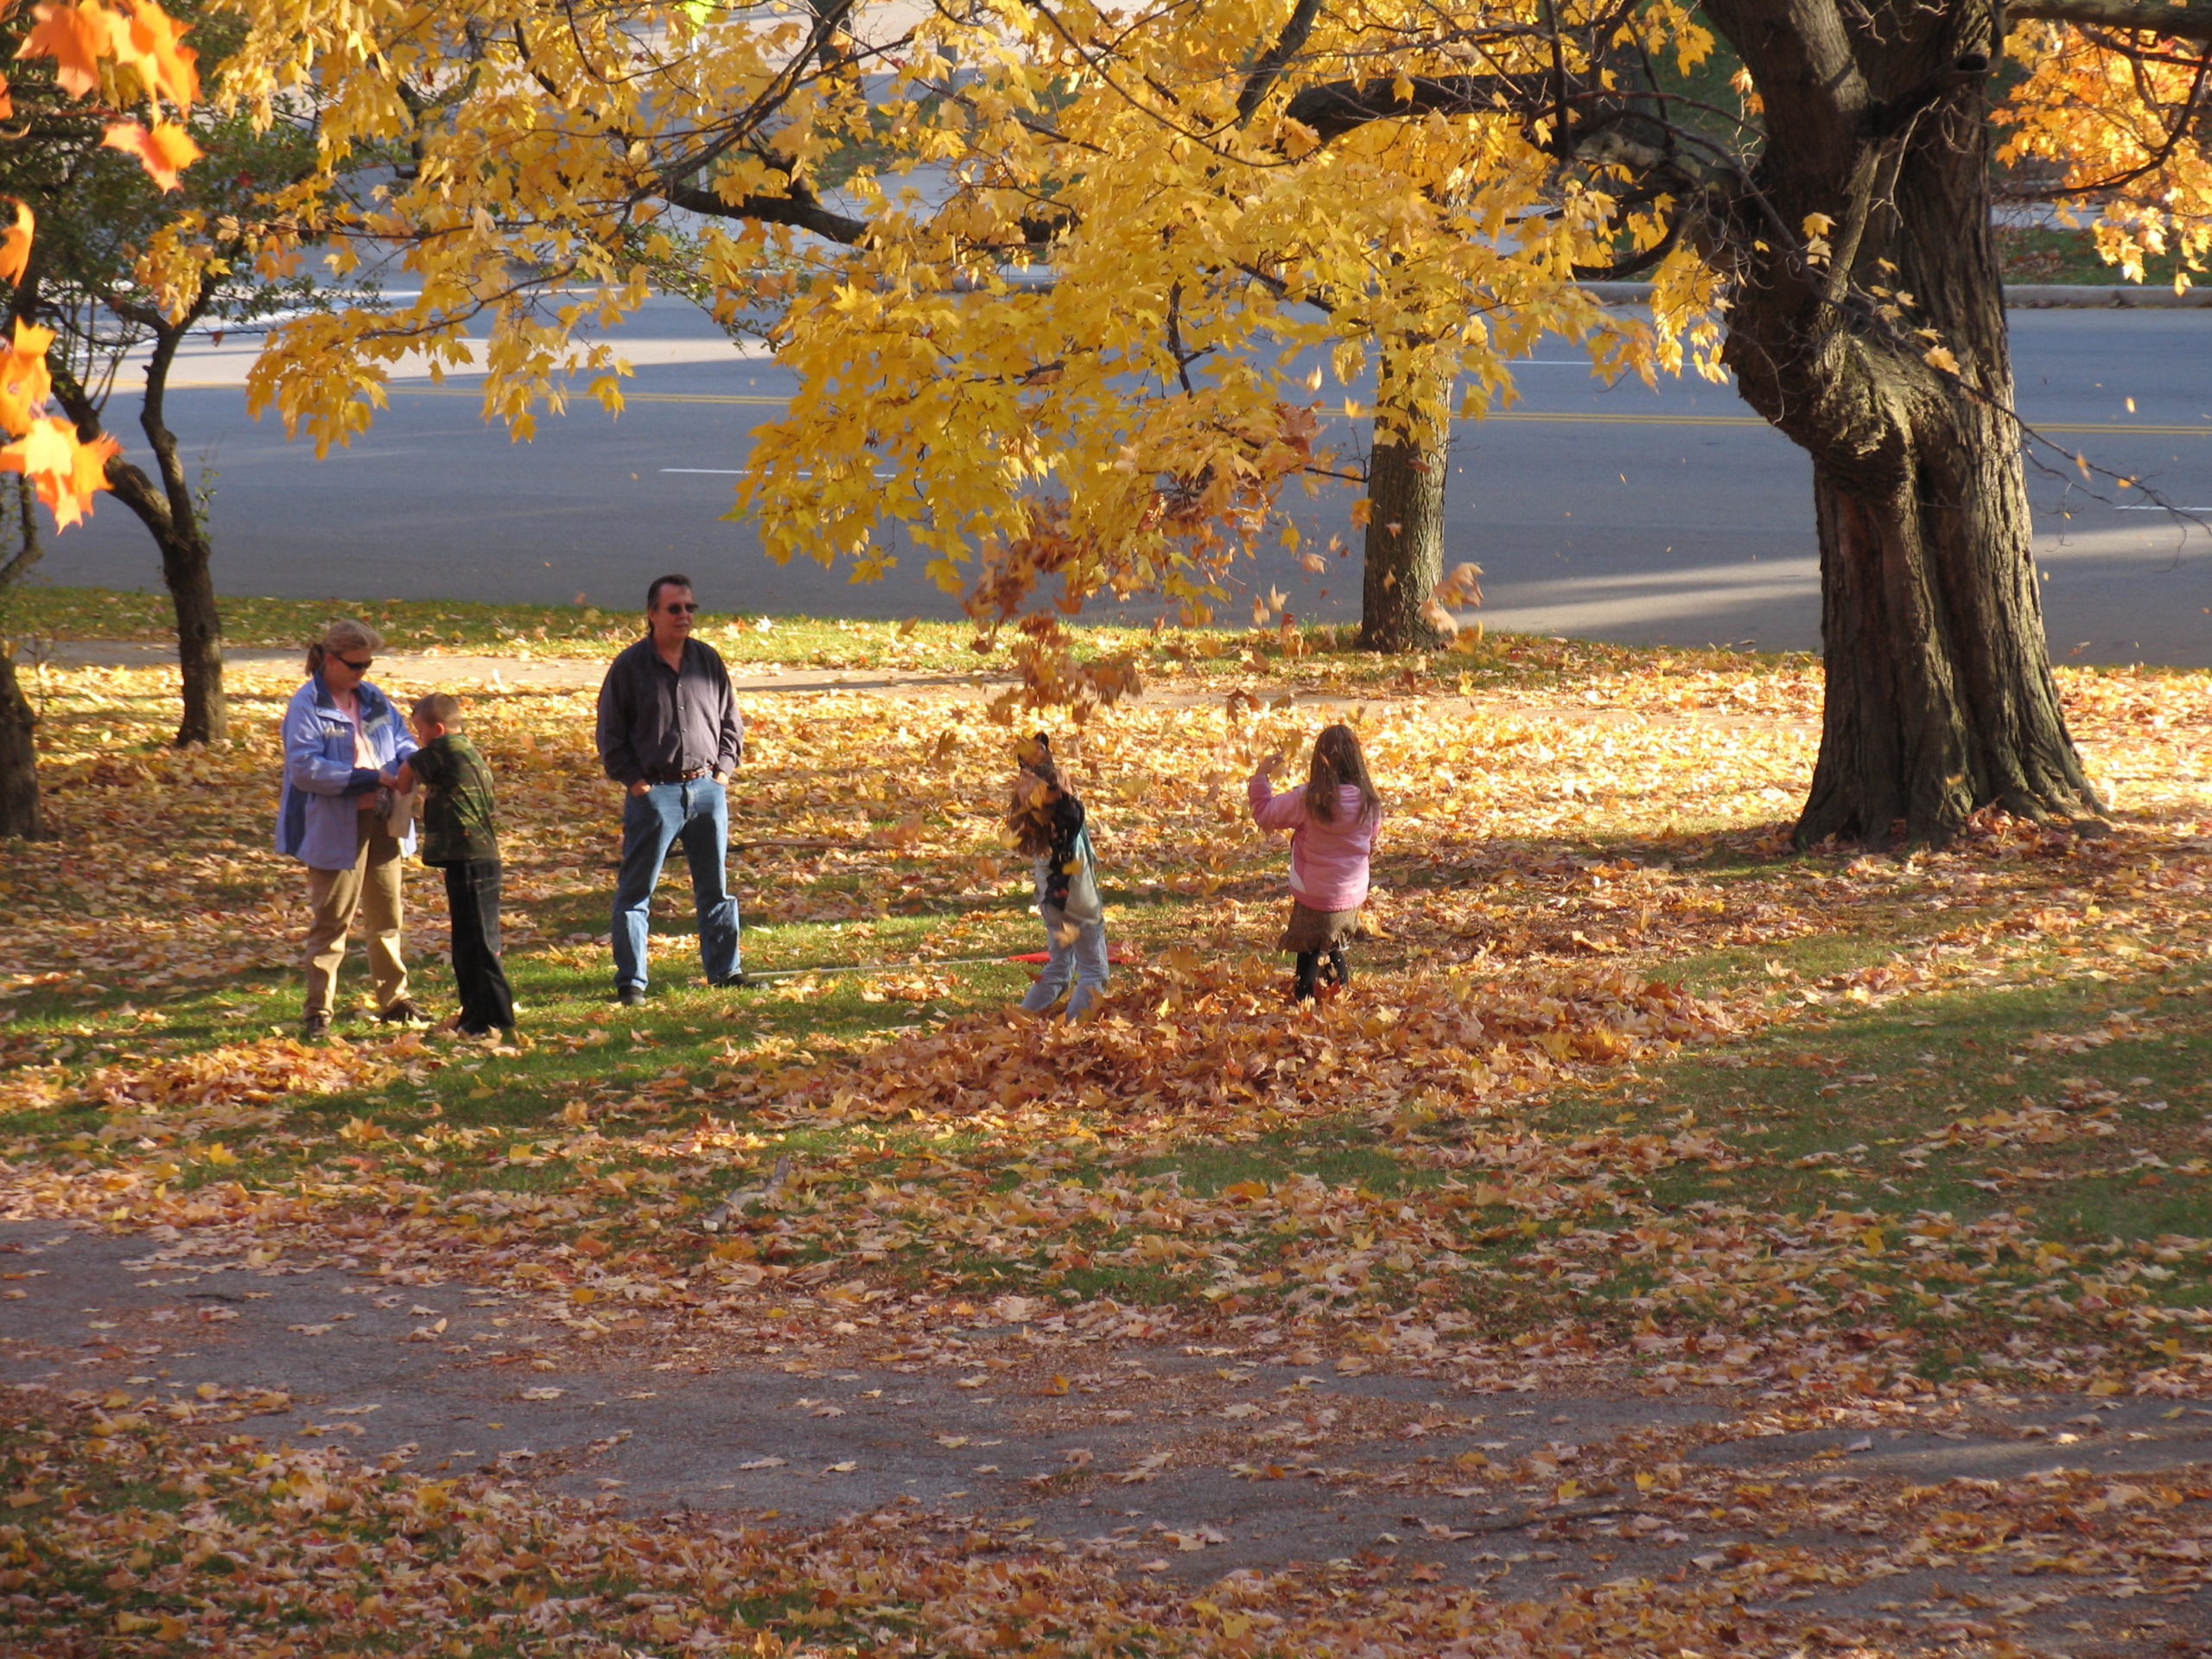 Gente paseando por el parque en un día de otoño